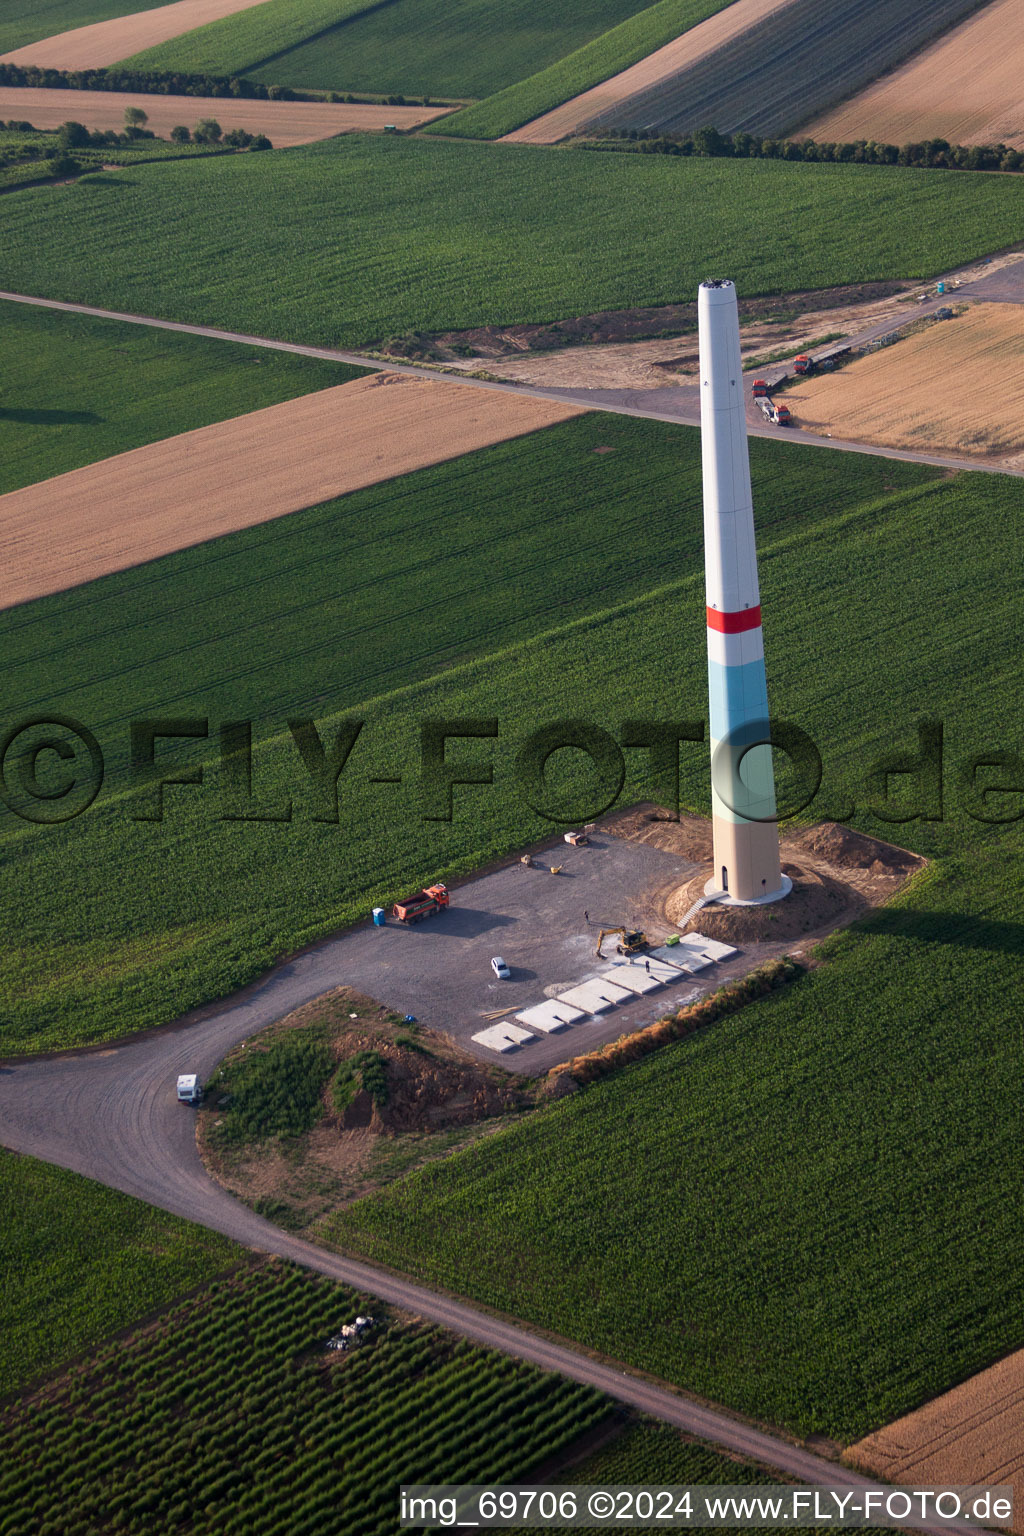 Vue aérienne de Construction de parc éolien à Offenbach an der Queich dans le département Rhénanie-Palatinat, Allemagne